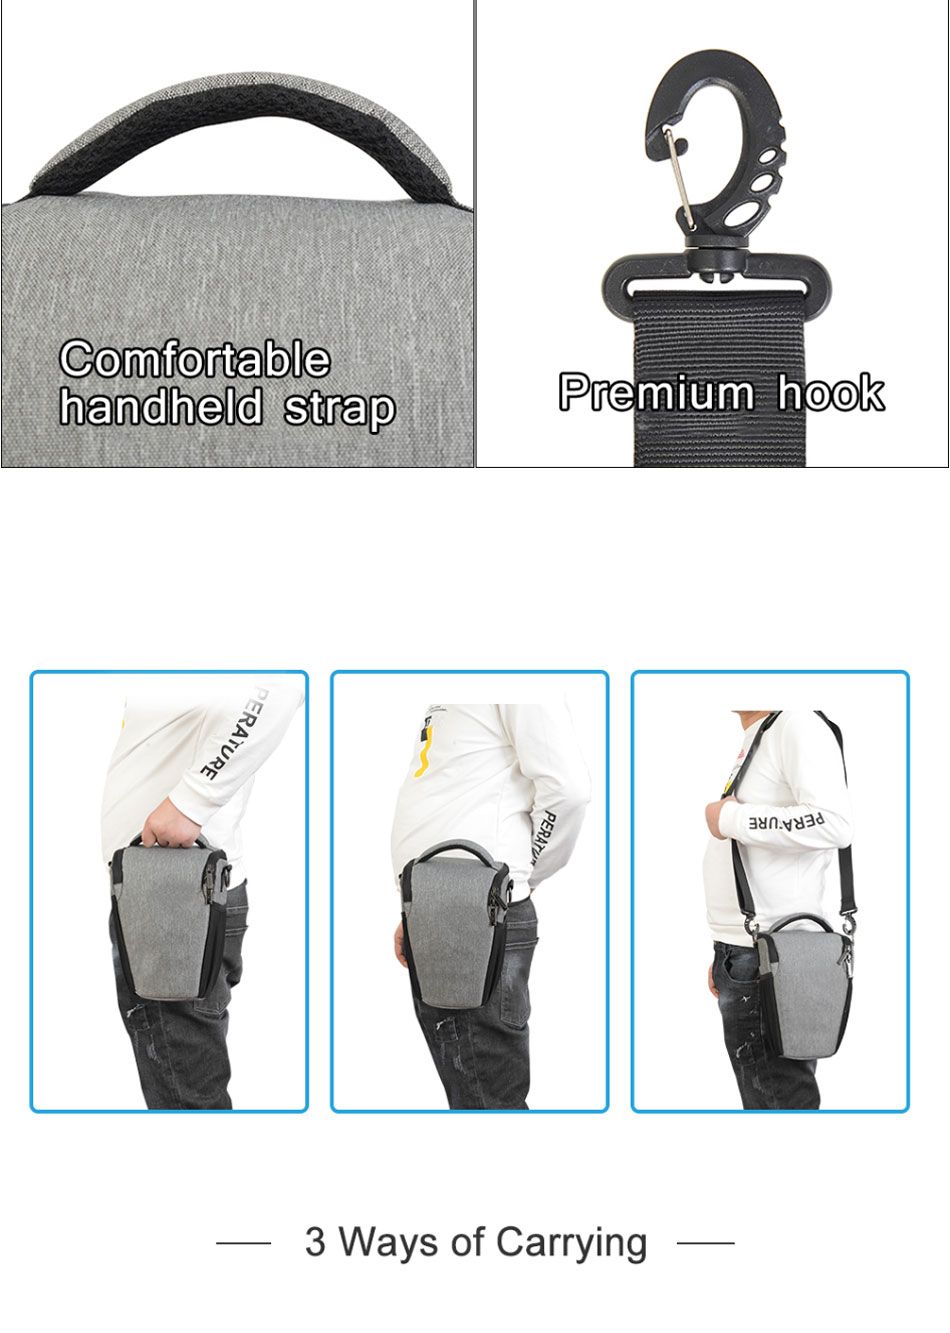 Caden-D1-Shoulder-Sling-Bag-Pouch-Water-resistant-Carry-Bag-with-Adjustable-Strap-for-DSLR-SLR-Camer-1556467